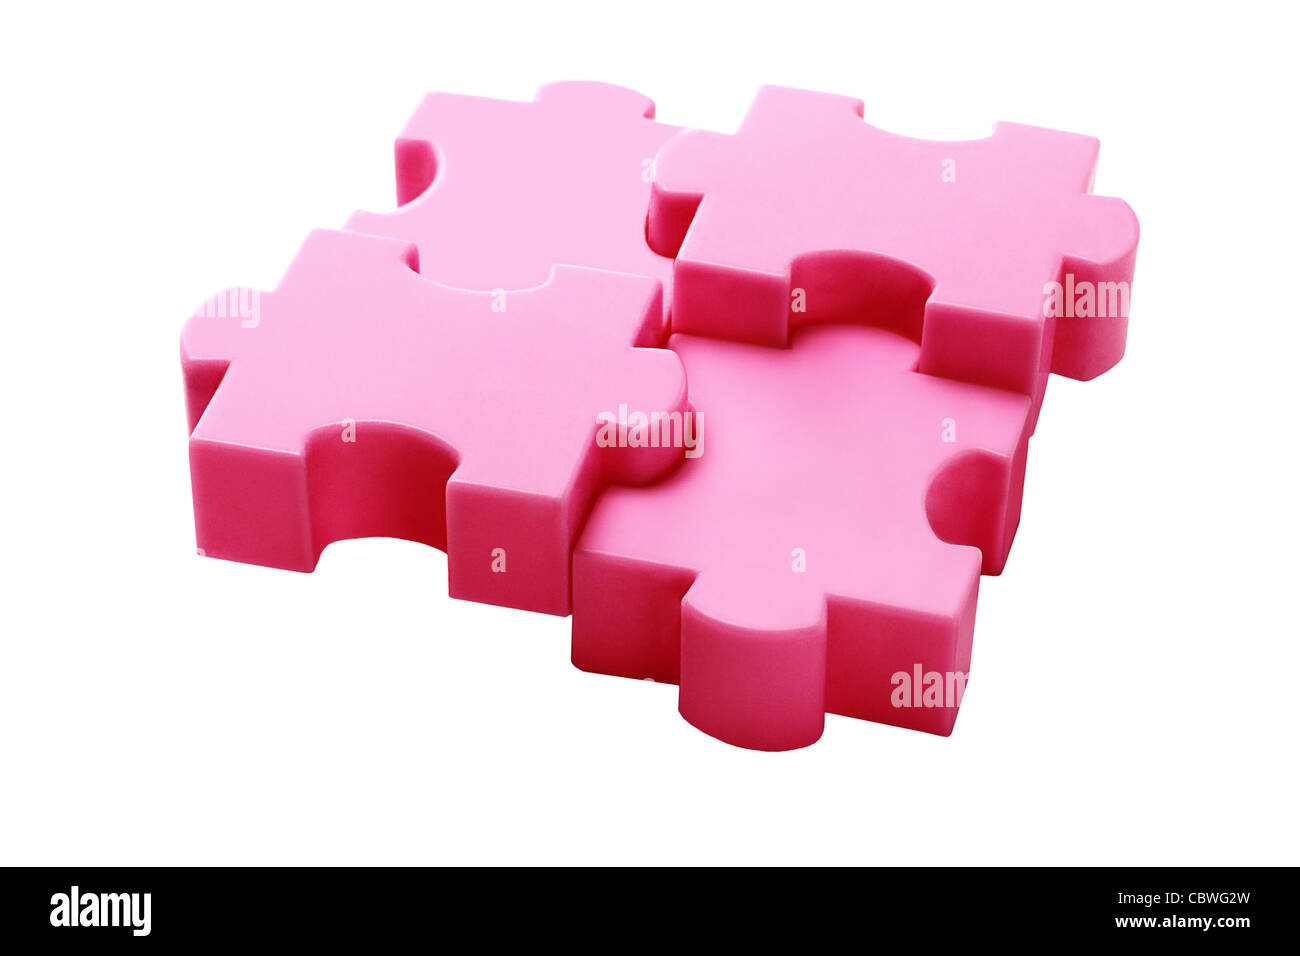 Interlocked Plastic Jigsaw Puzzle Blocks On White Background Stock Photo